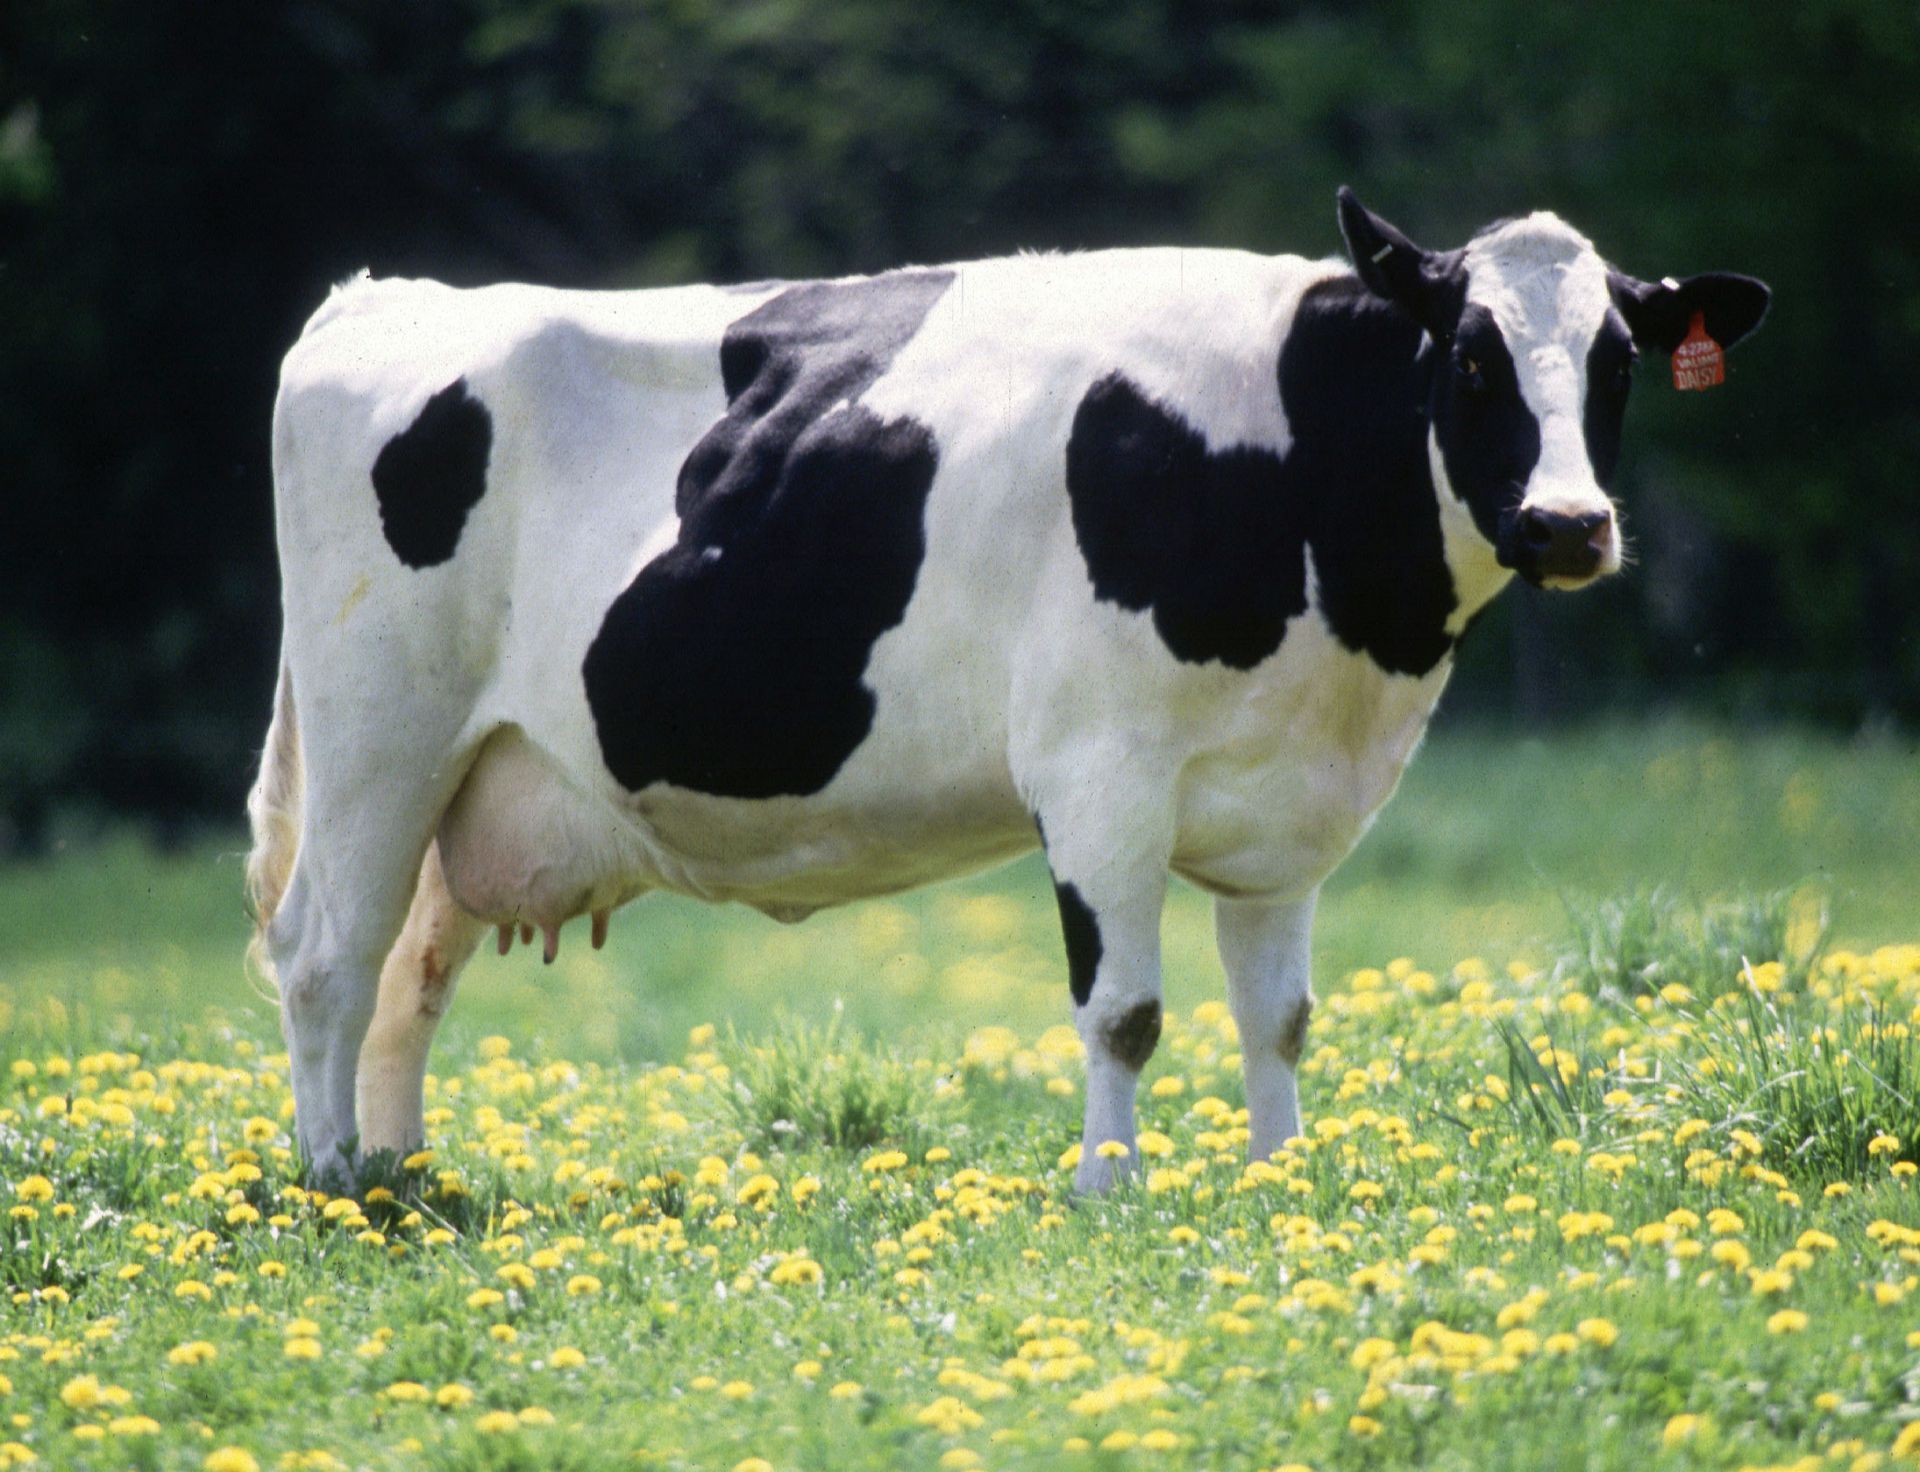 Hình ảnh của một con bò sữa xuất hiện trong mơ là một điềm báo tốt và vô cùng may mắn